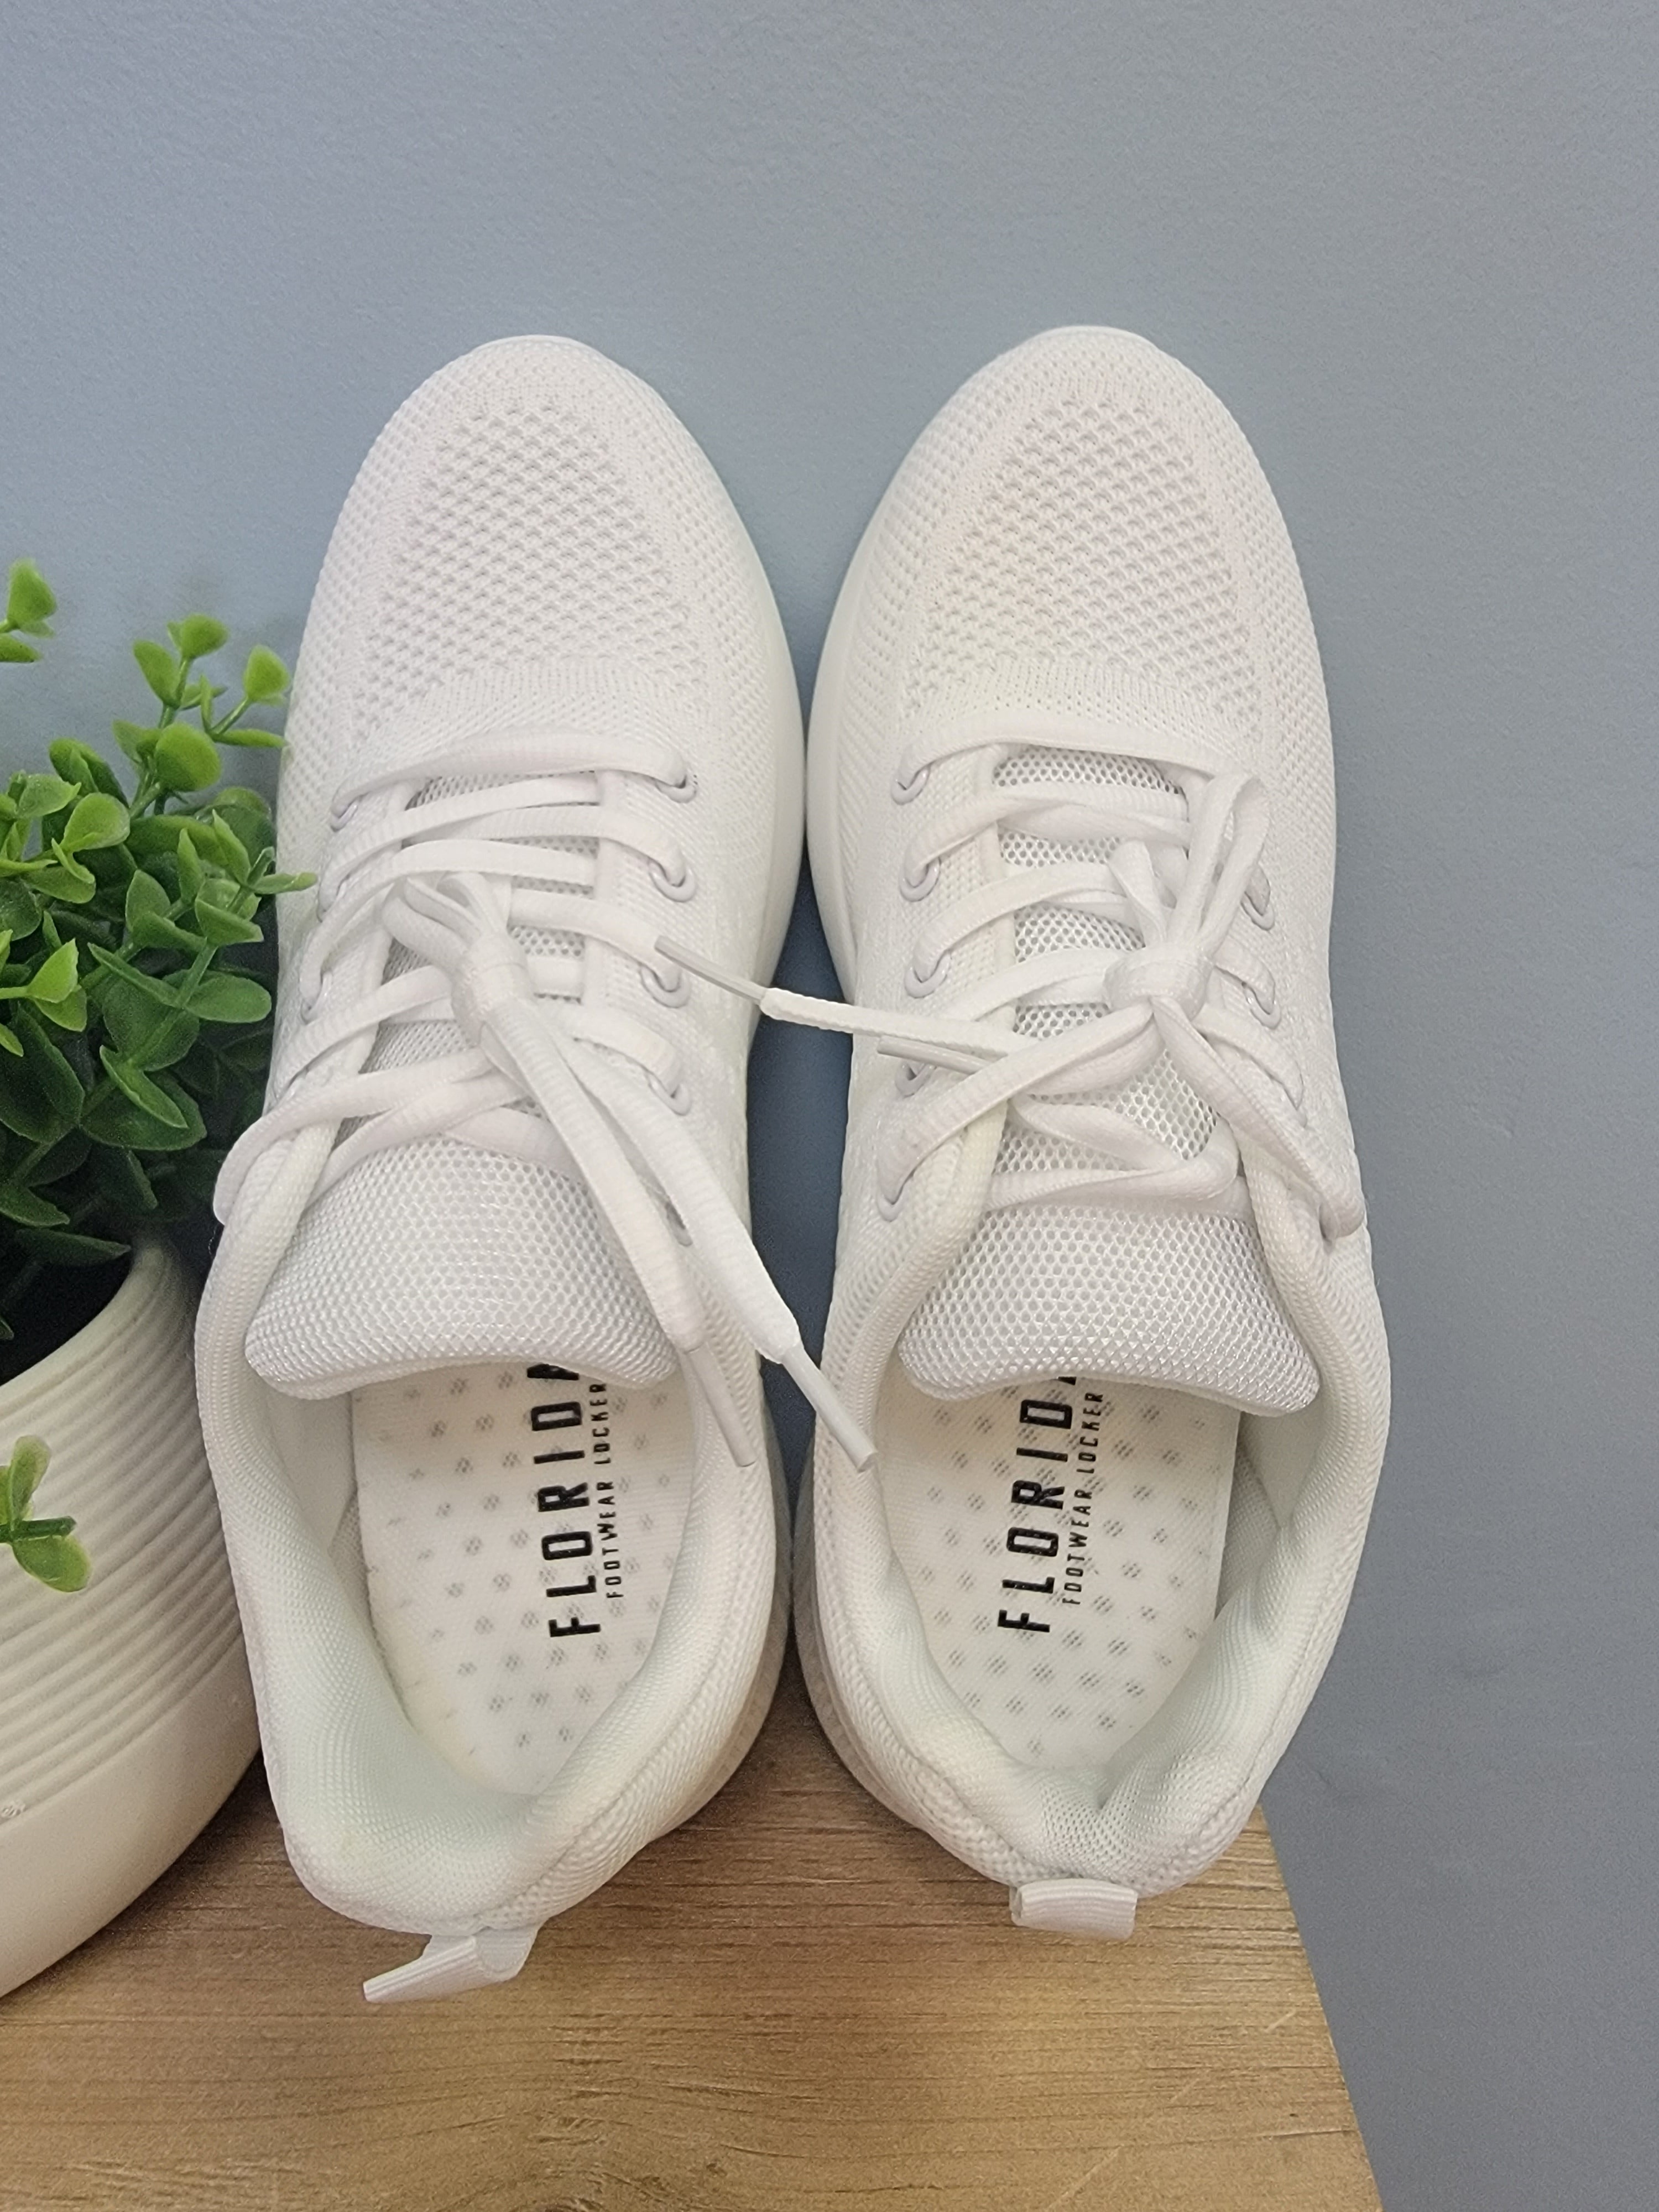 Li-Ning's Way Of Wade Sneakers are Available at Foot Locker | Nice Kicks